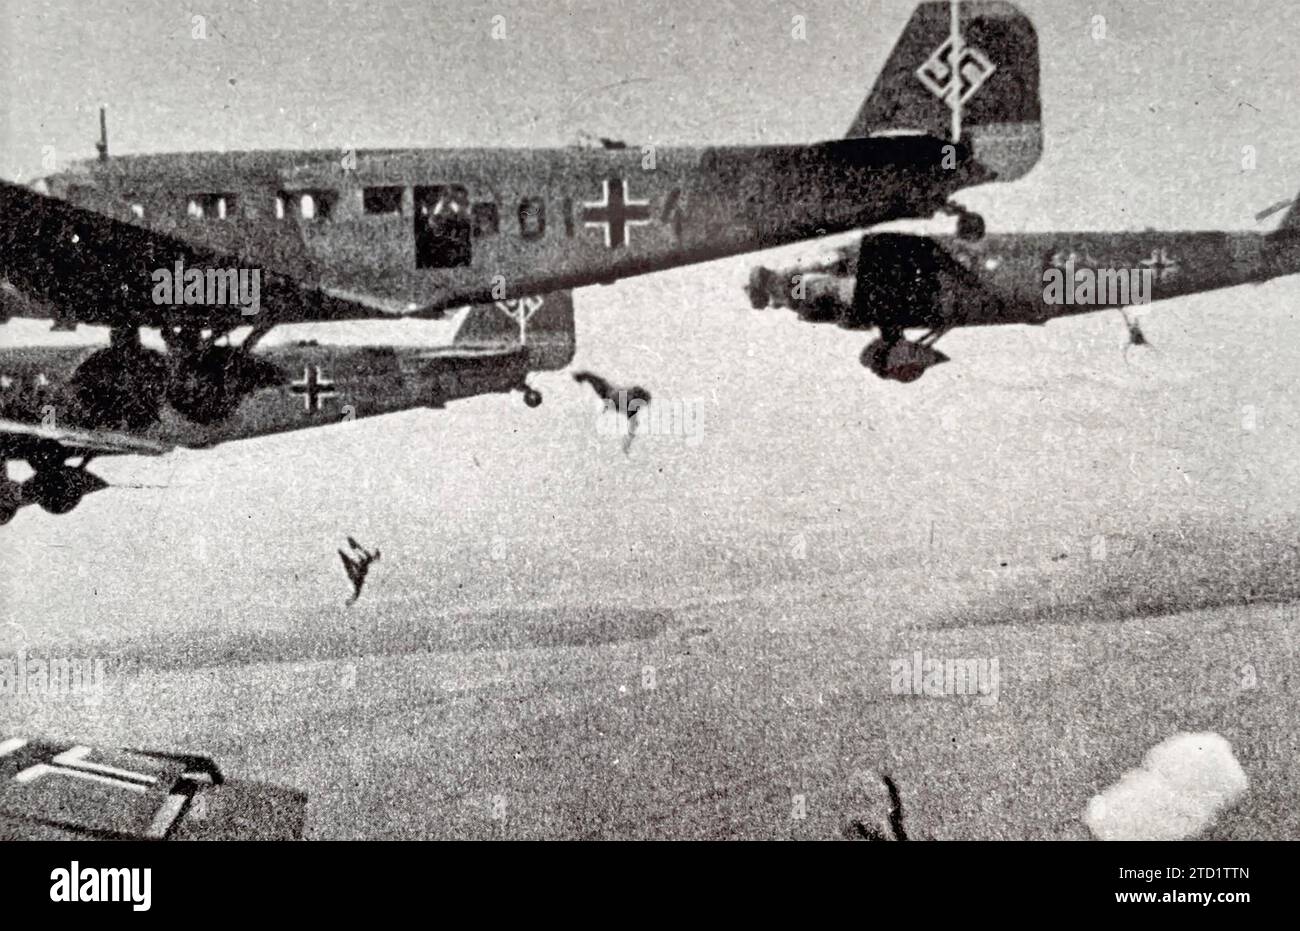 LUFTWAFFE Fallschirmjäger, die um 1940 von Junkers Ju-52 Flugzeugen abgesetzt wurden Stockfoto